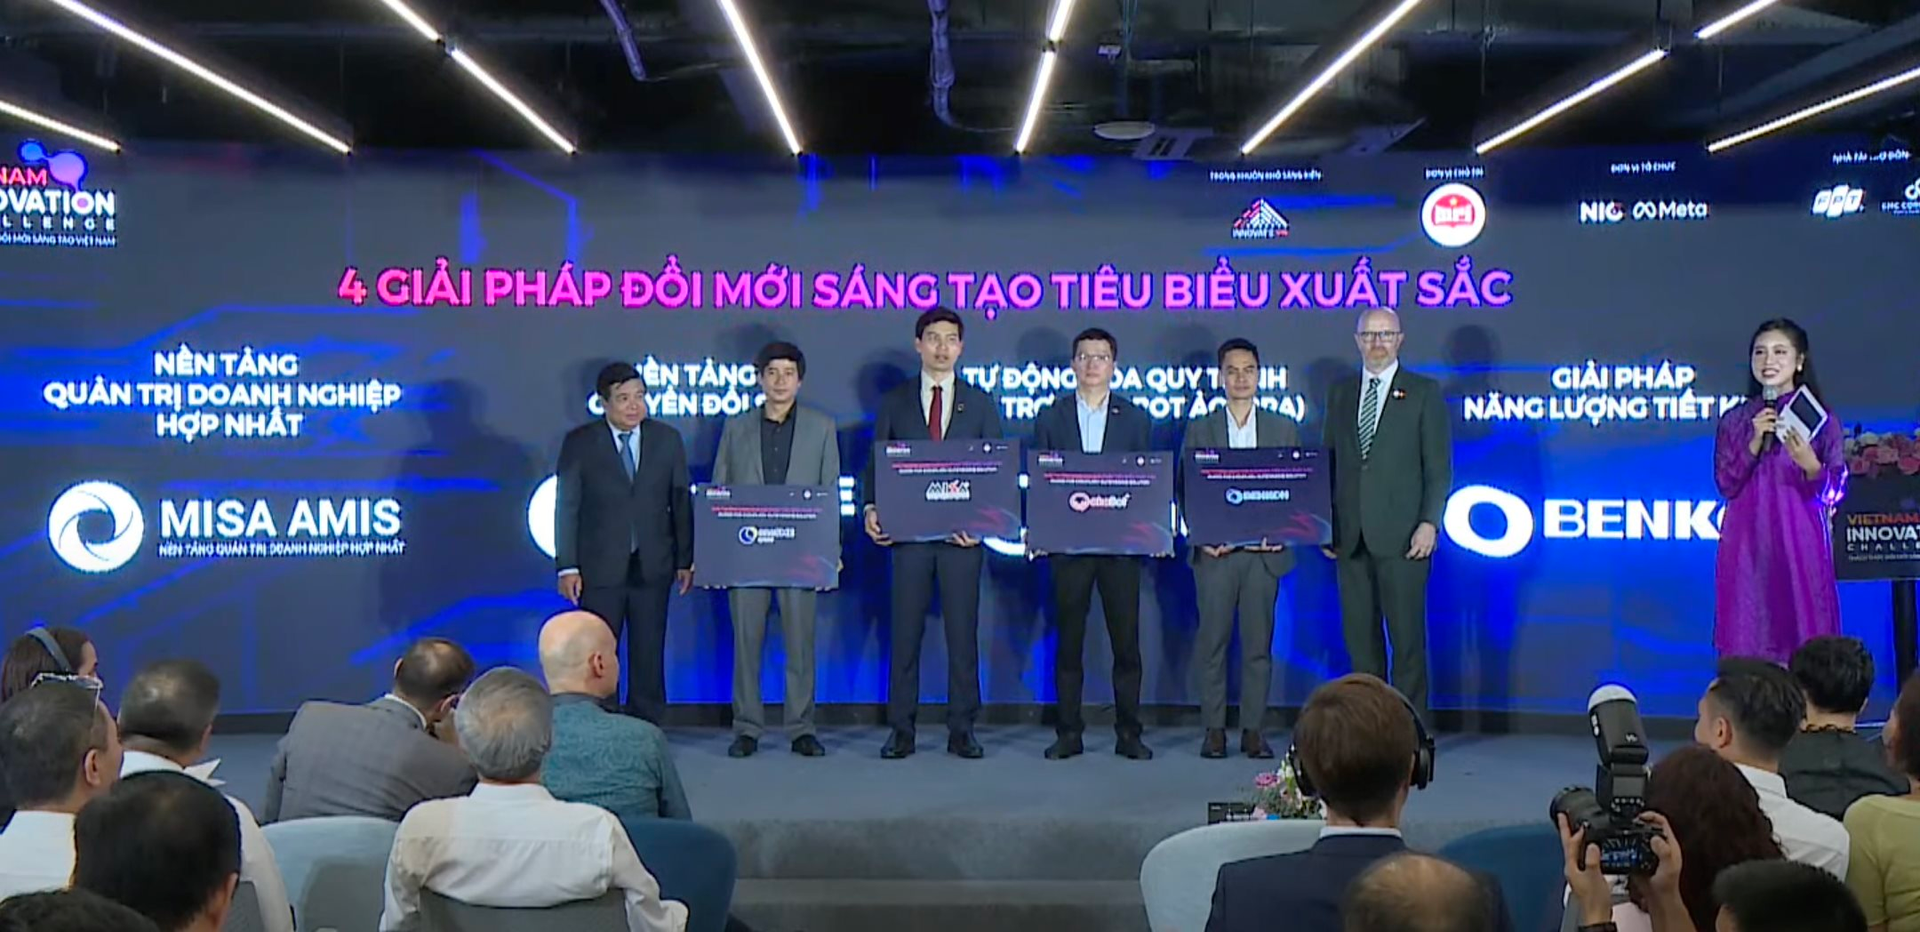 Lộ diện 4 giải pháp sáng tạo tốt nhất Việt Nam: FPT, VNPT, Misa và startup tối ưu hóa vận hành điều hòa Benkon được vinh danh - Ảnh 1